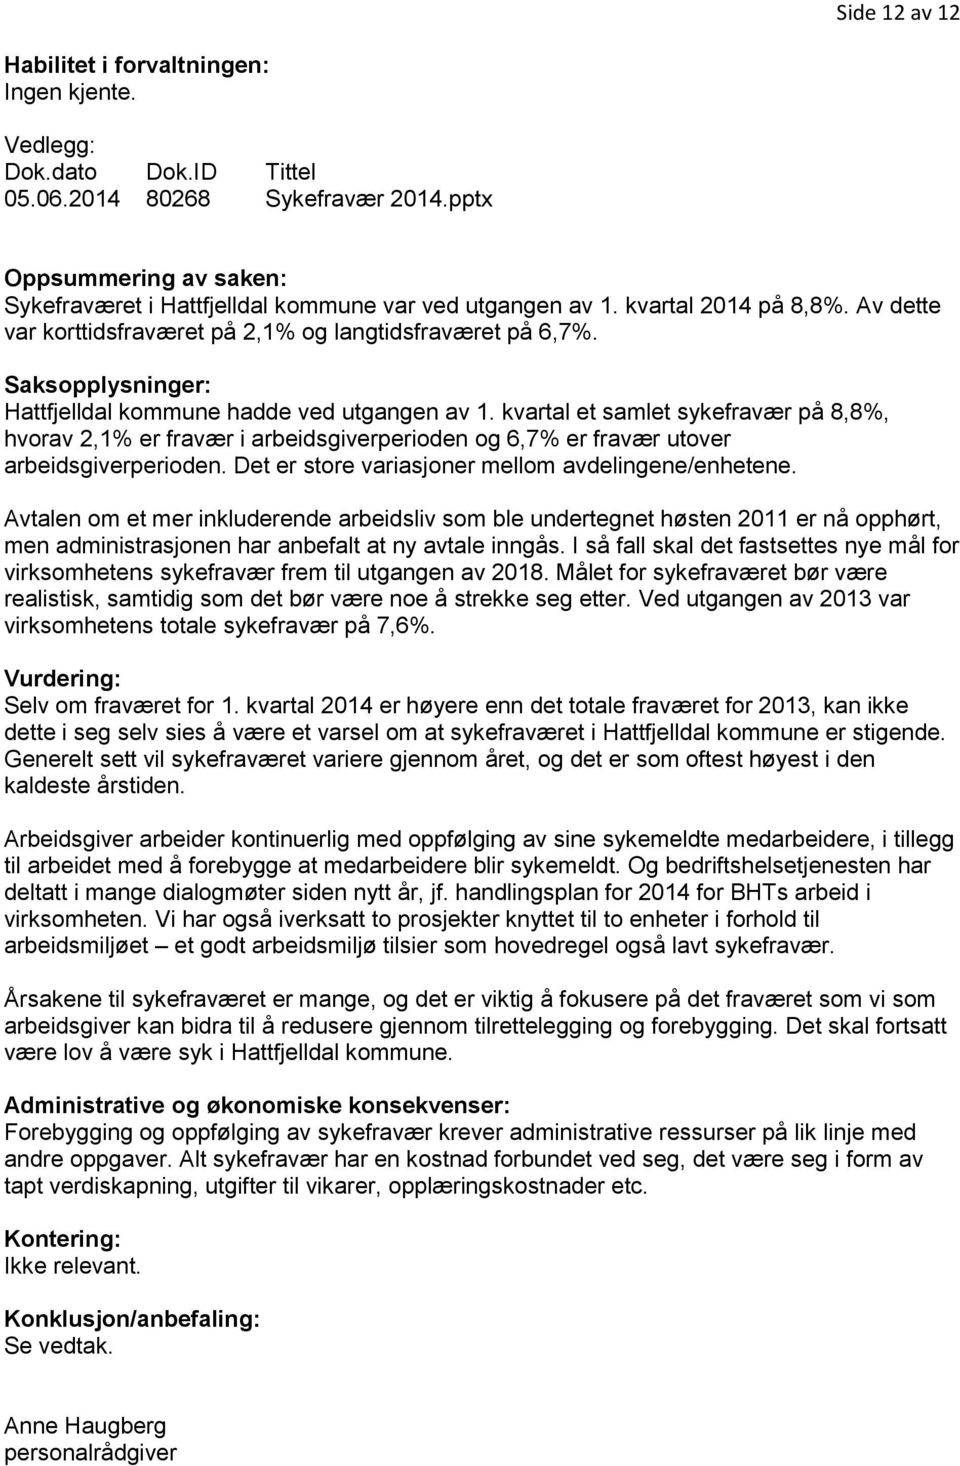 Saksopplysninger: Hattfjelldal kommune hadde ved utgangen av 1. kvartal et samlet sykefravær på 8,8%, hvorav 2,1% er fravær i arbeidsgiverperioden og 6,7% er fravær utover arbeidsgiverperioden.